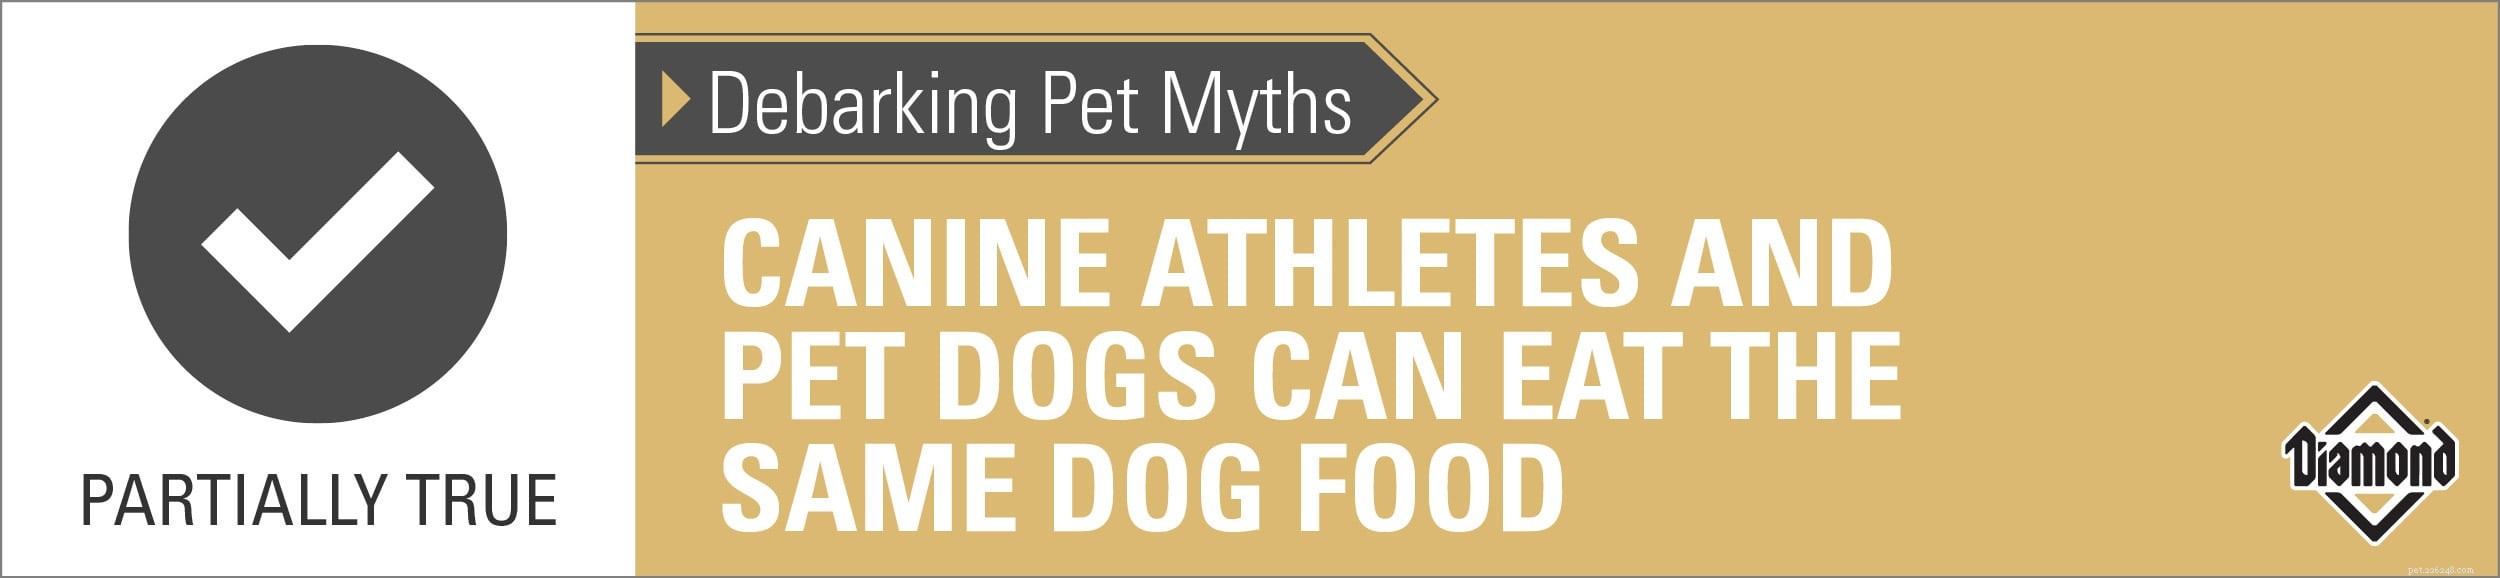 Развенчание мифов о домашних животных:спортсмены-собаки и домашние собаки могут есть один и тот же корм для собак